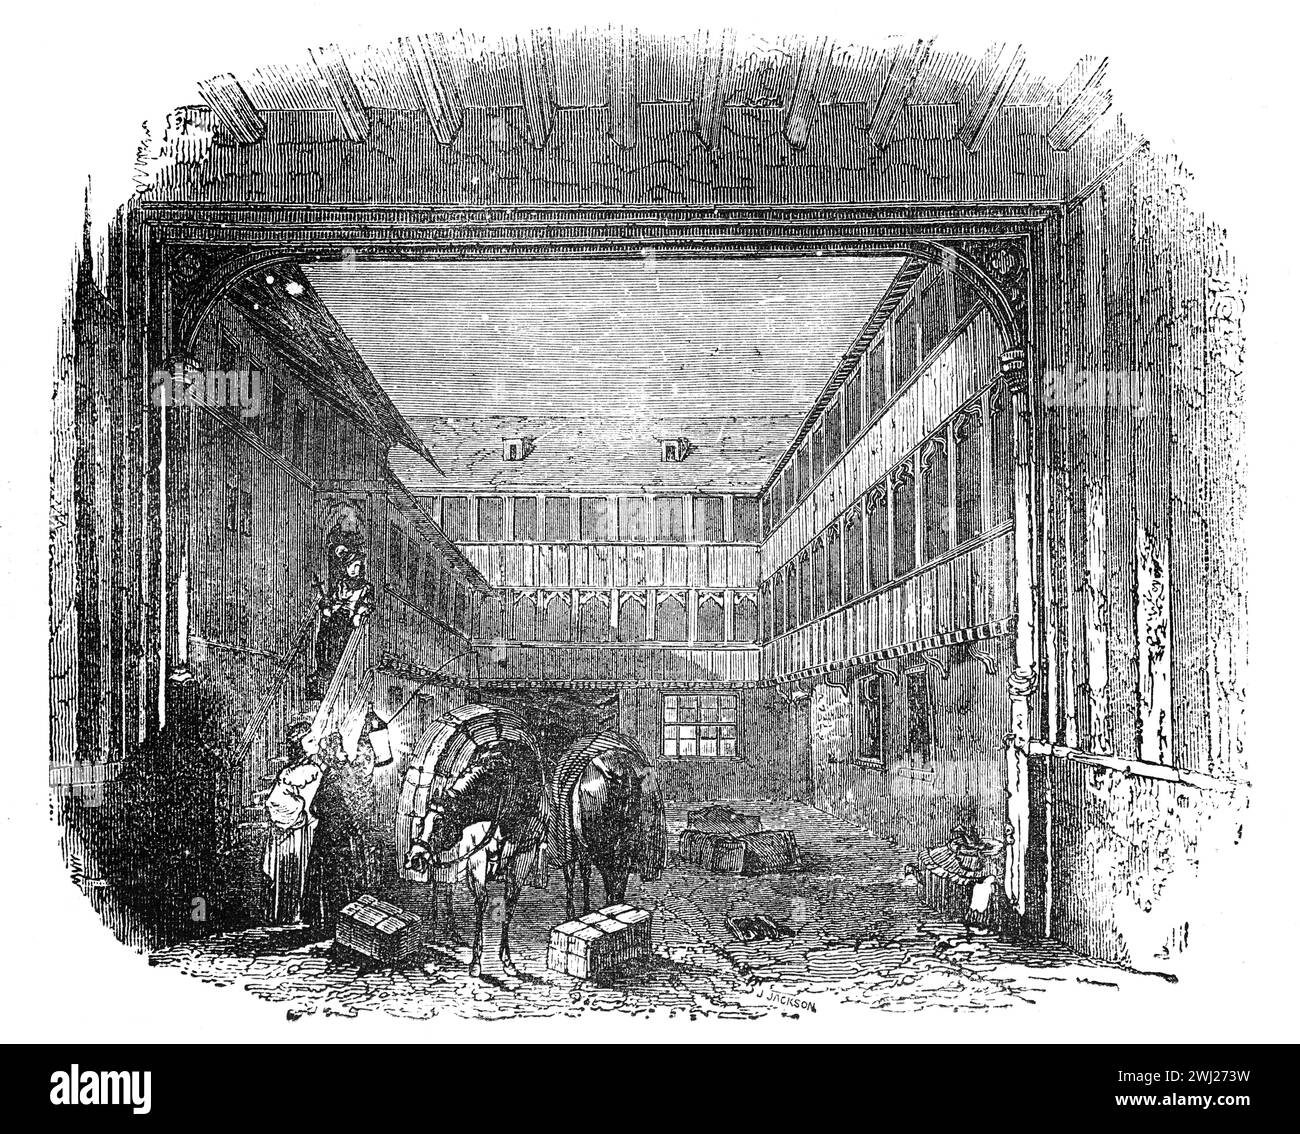 Un Inn Yard i Londres. Siglo XVI o XVII; Ilustración en blanco y negro de la "vieja Inglaterra" publicada por James Sangster en 1860. Foto de stock